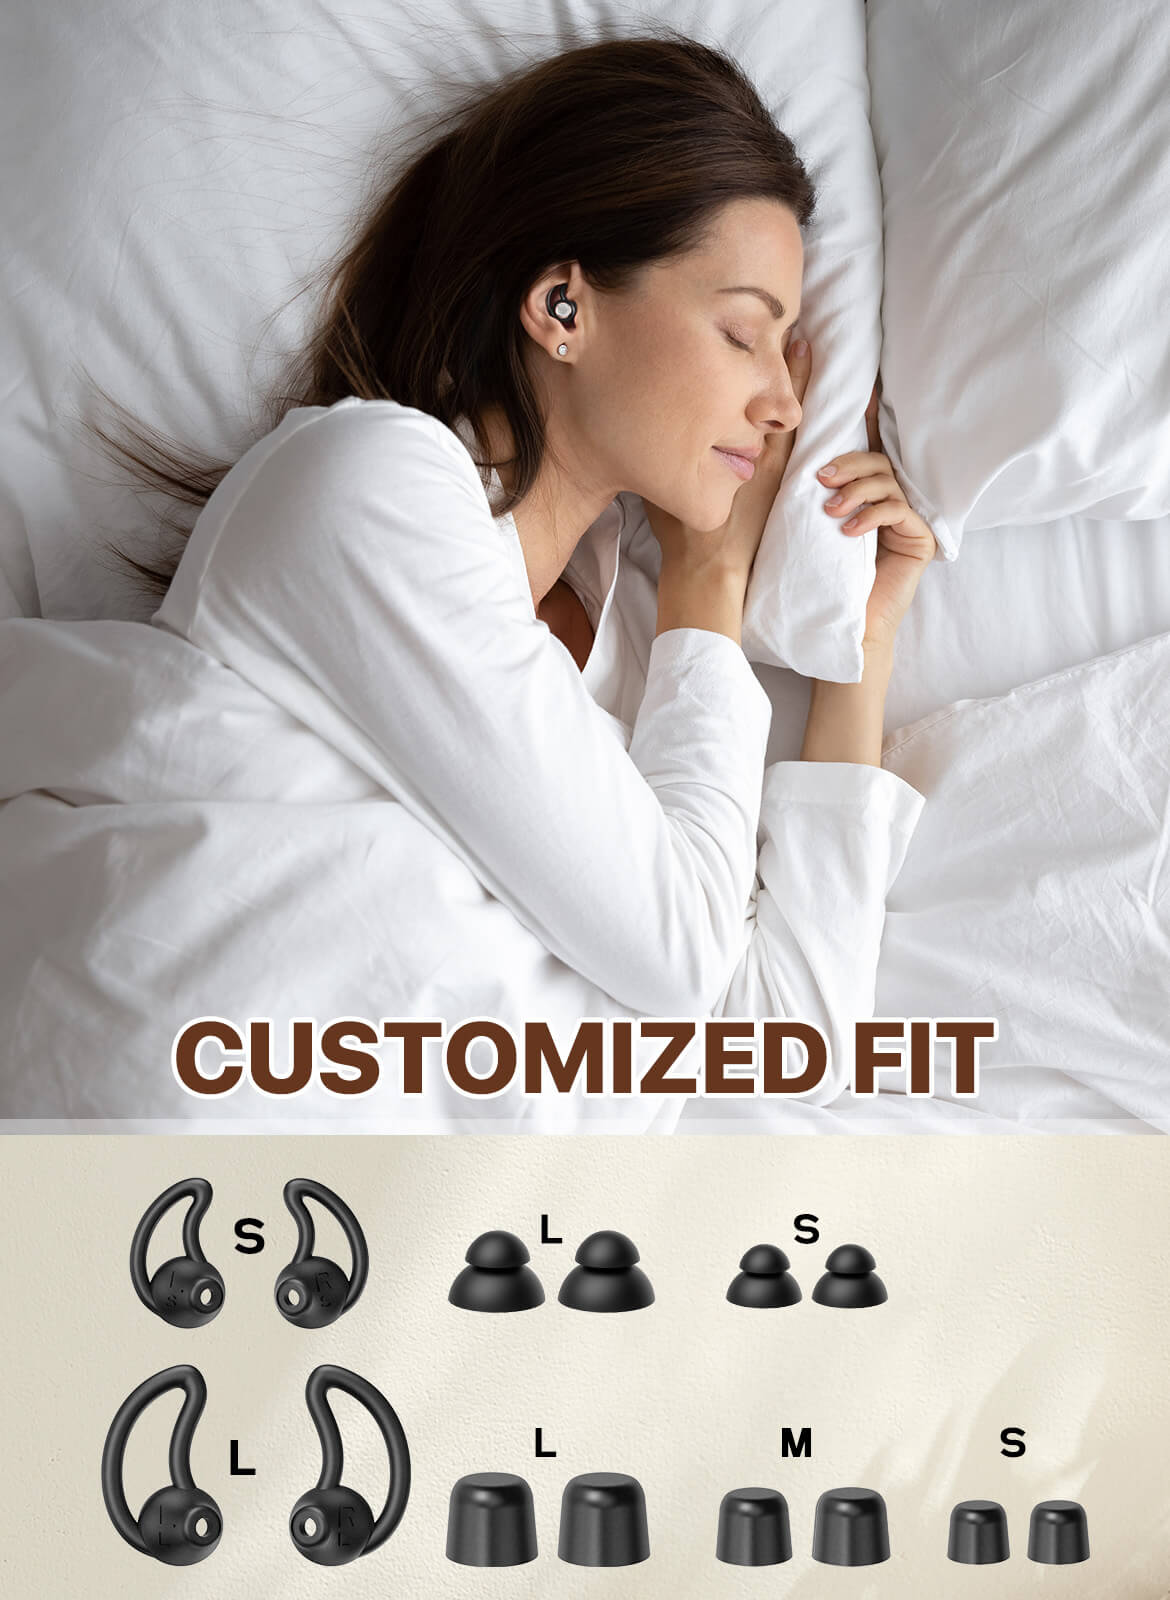 (30db & 33db) Noise Reduction Sleeping Ear Plugs